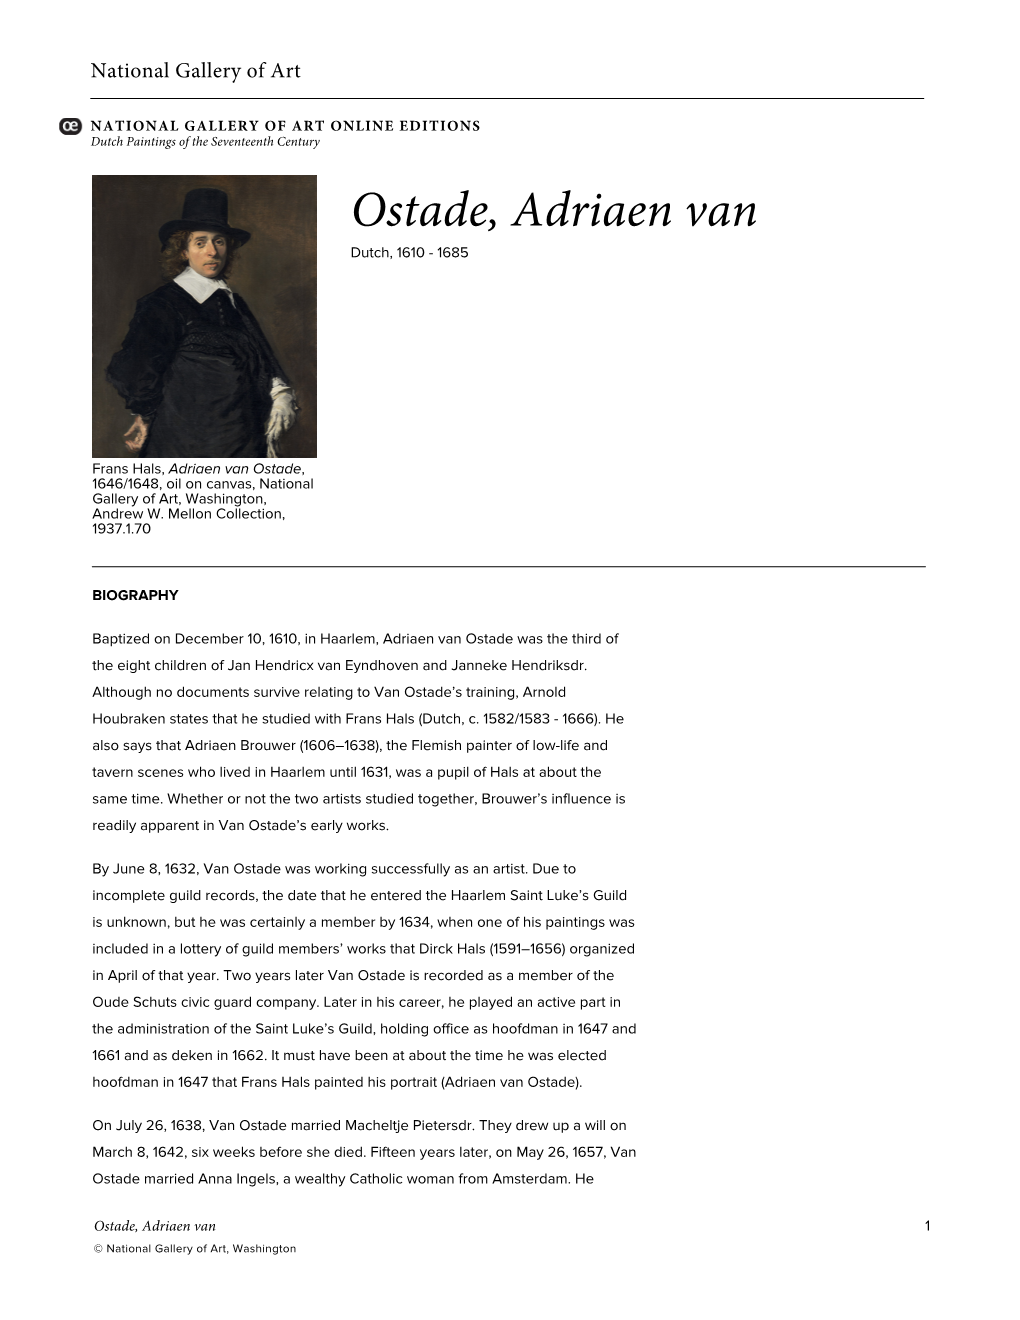 Ostade, Adriaen Van Dutch, 1610 - 1685